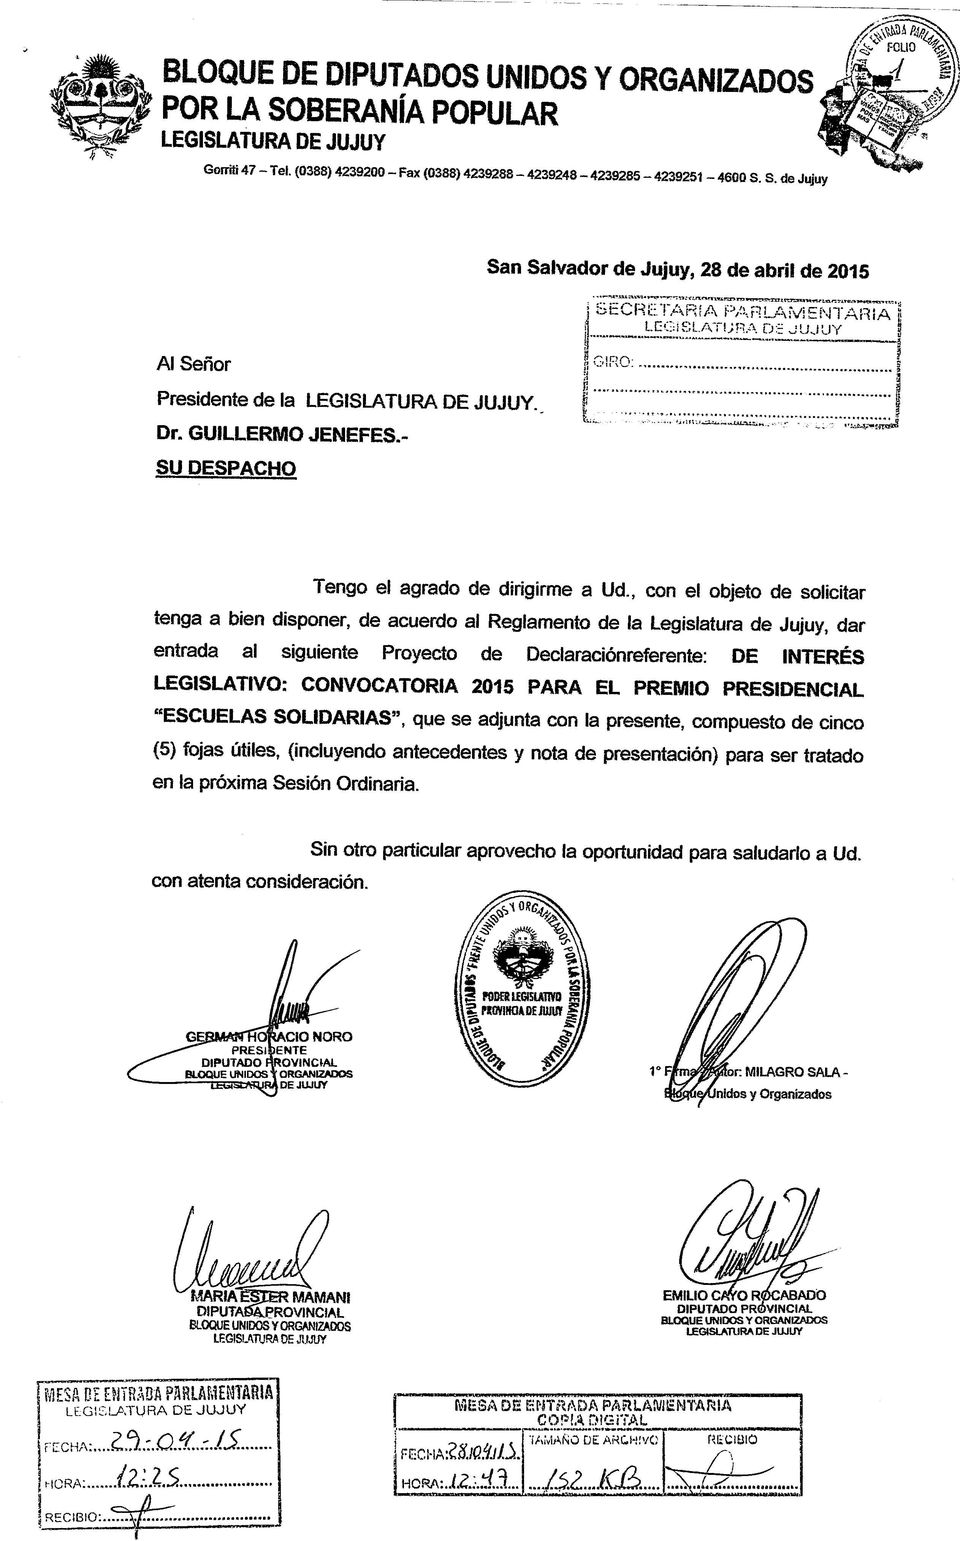 , con el objeto de solicitar tenga a bien disponer, de acuerdo al Reglamento de la Legislatura de Jujuy, dar entrada al siguiente Proyecto de Declaraciónreferente: DE INTERÉS LEGISLATIVO: